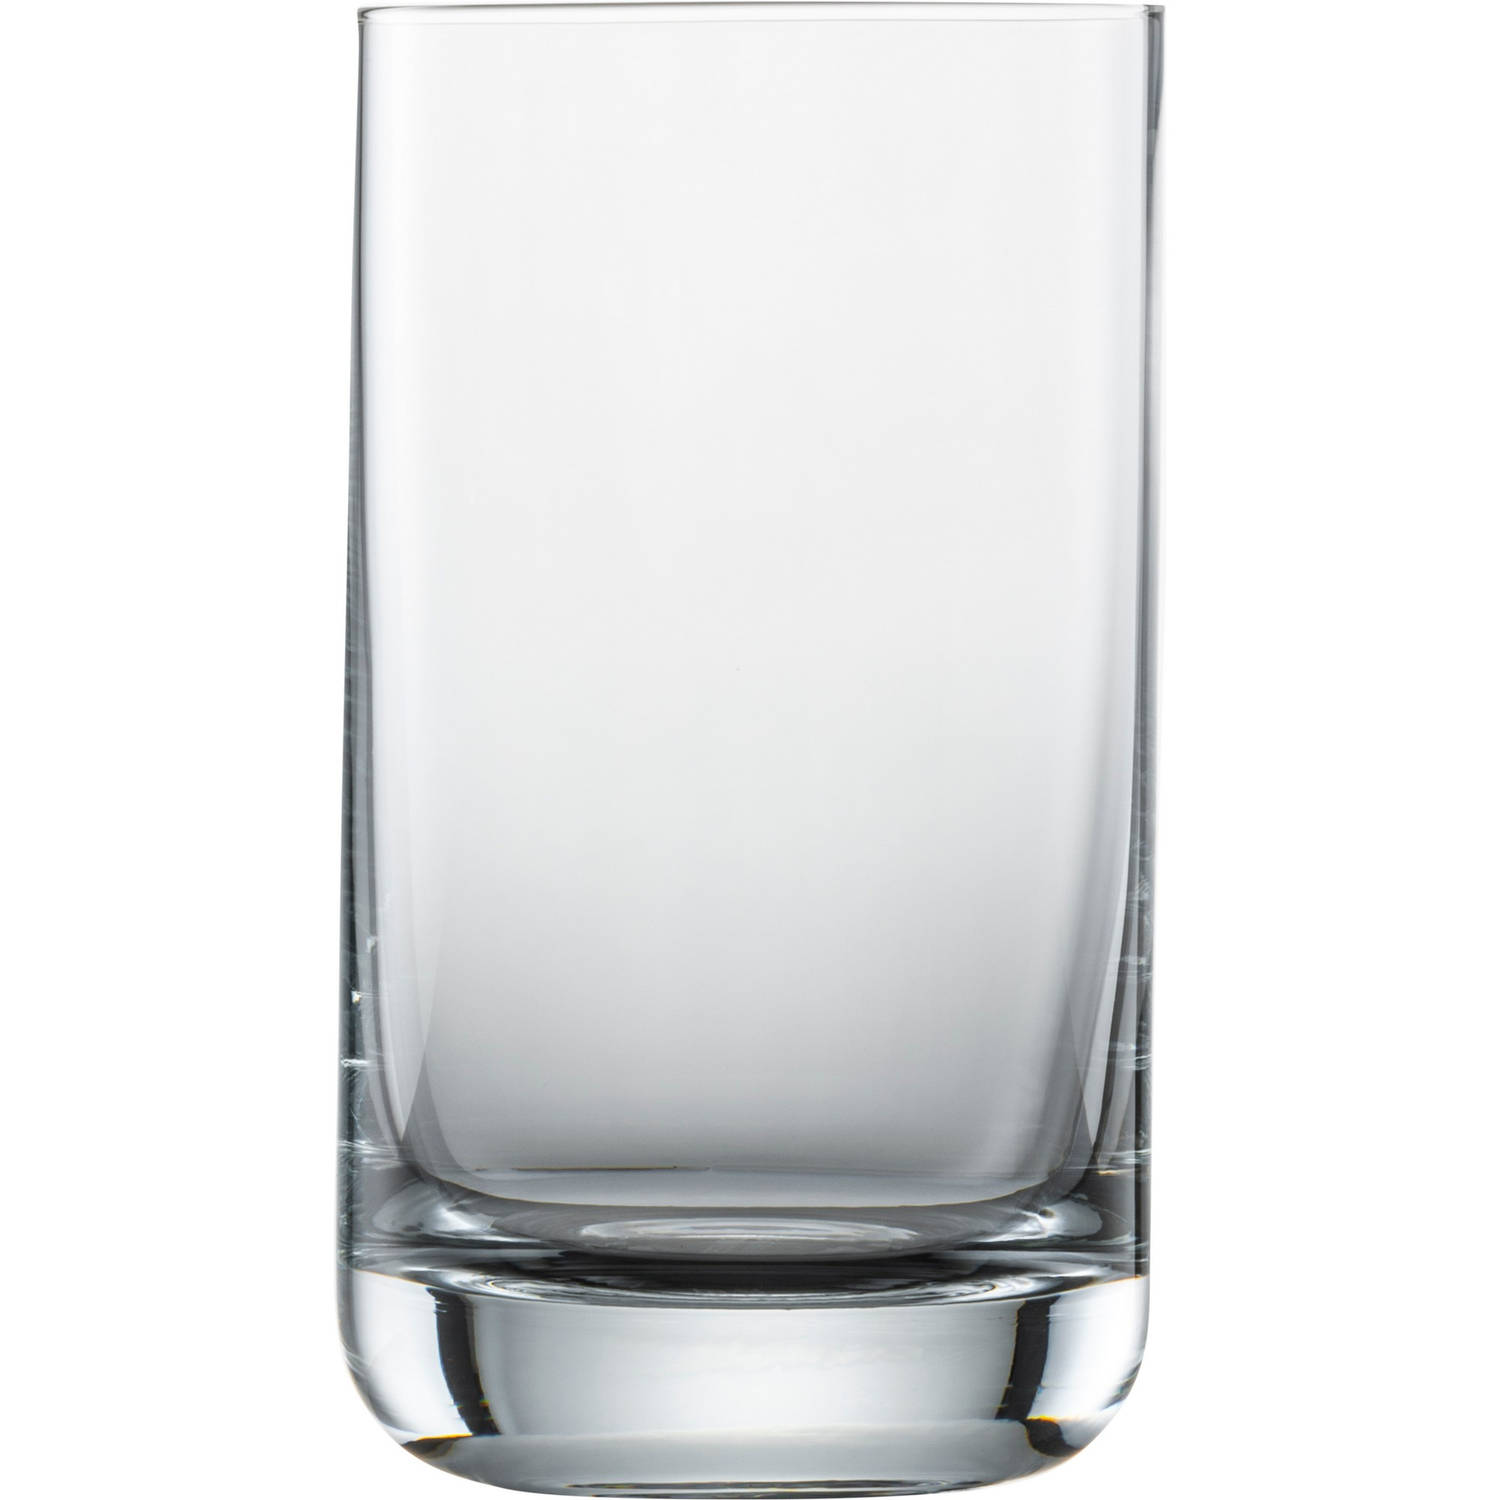 Schott Zwiesel Simple (Convention) Waterglas - 255ml - 6 glazen